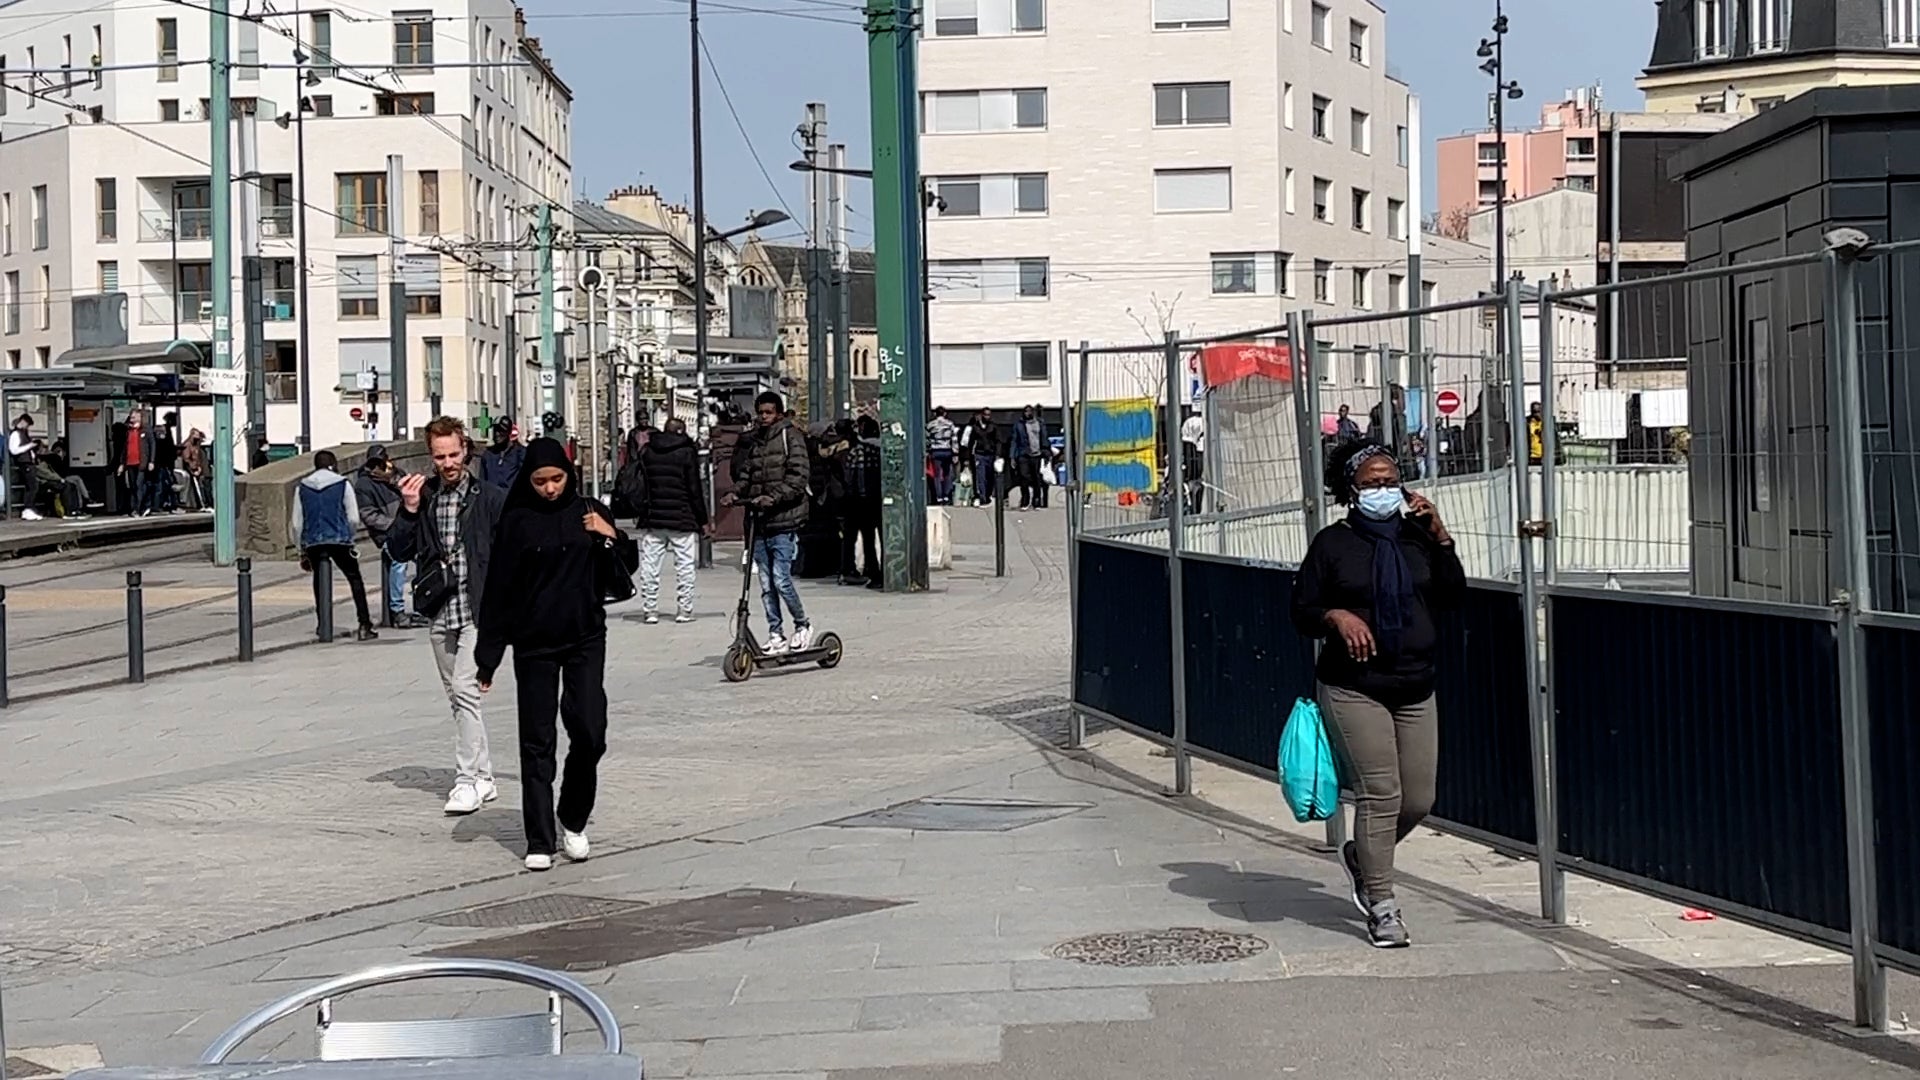 People walk through the streets in Seine-Saint-Denis